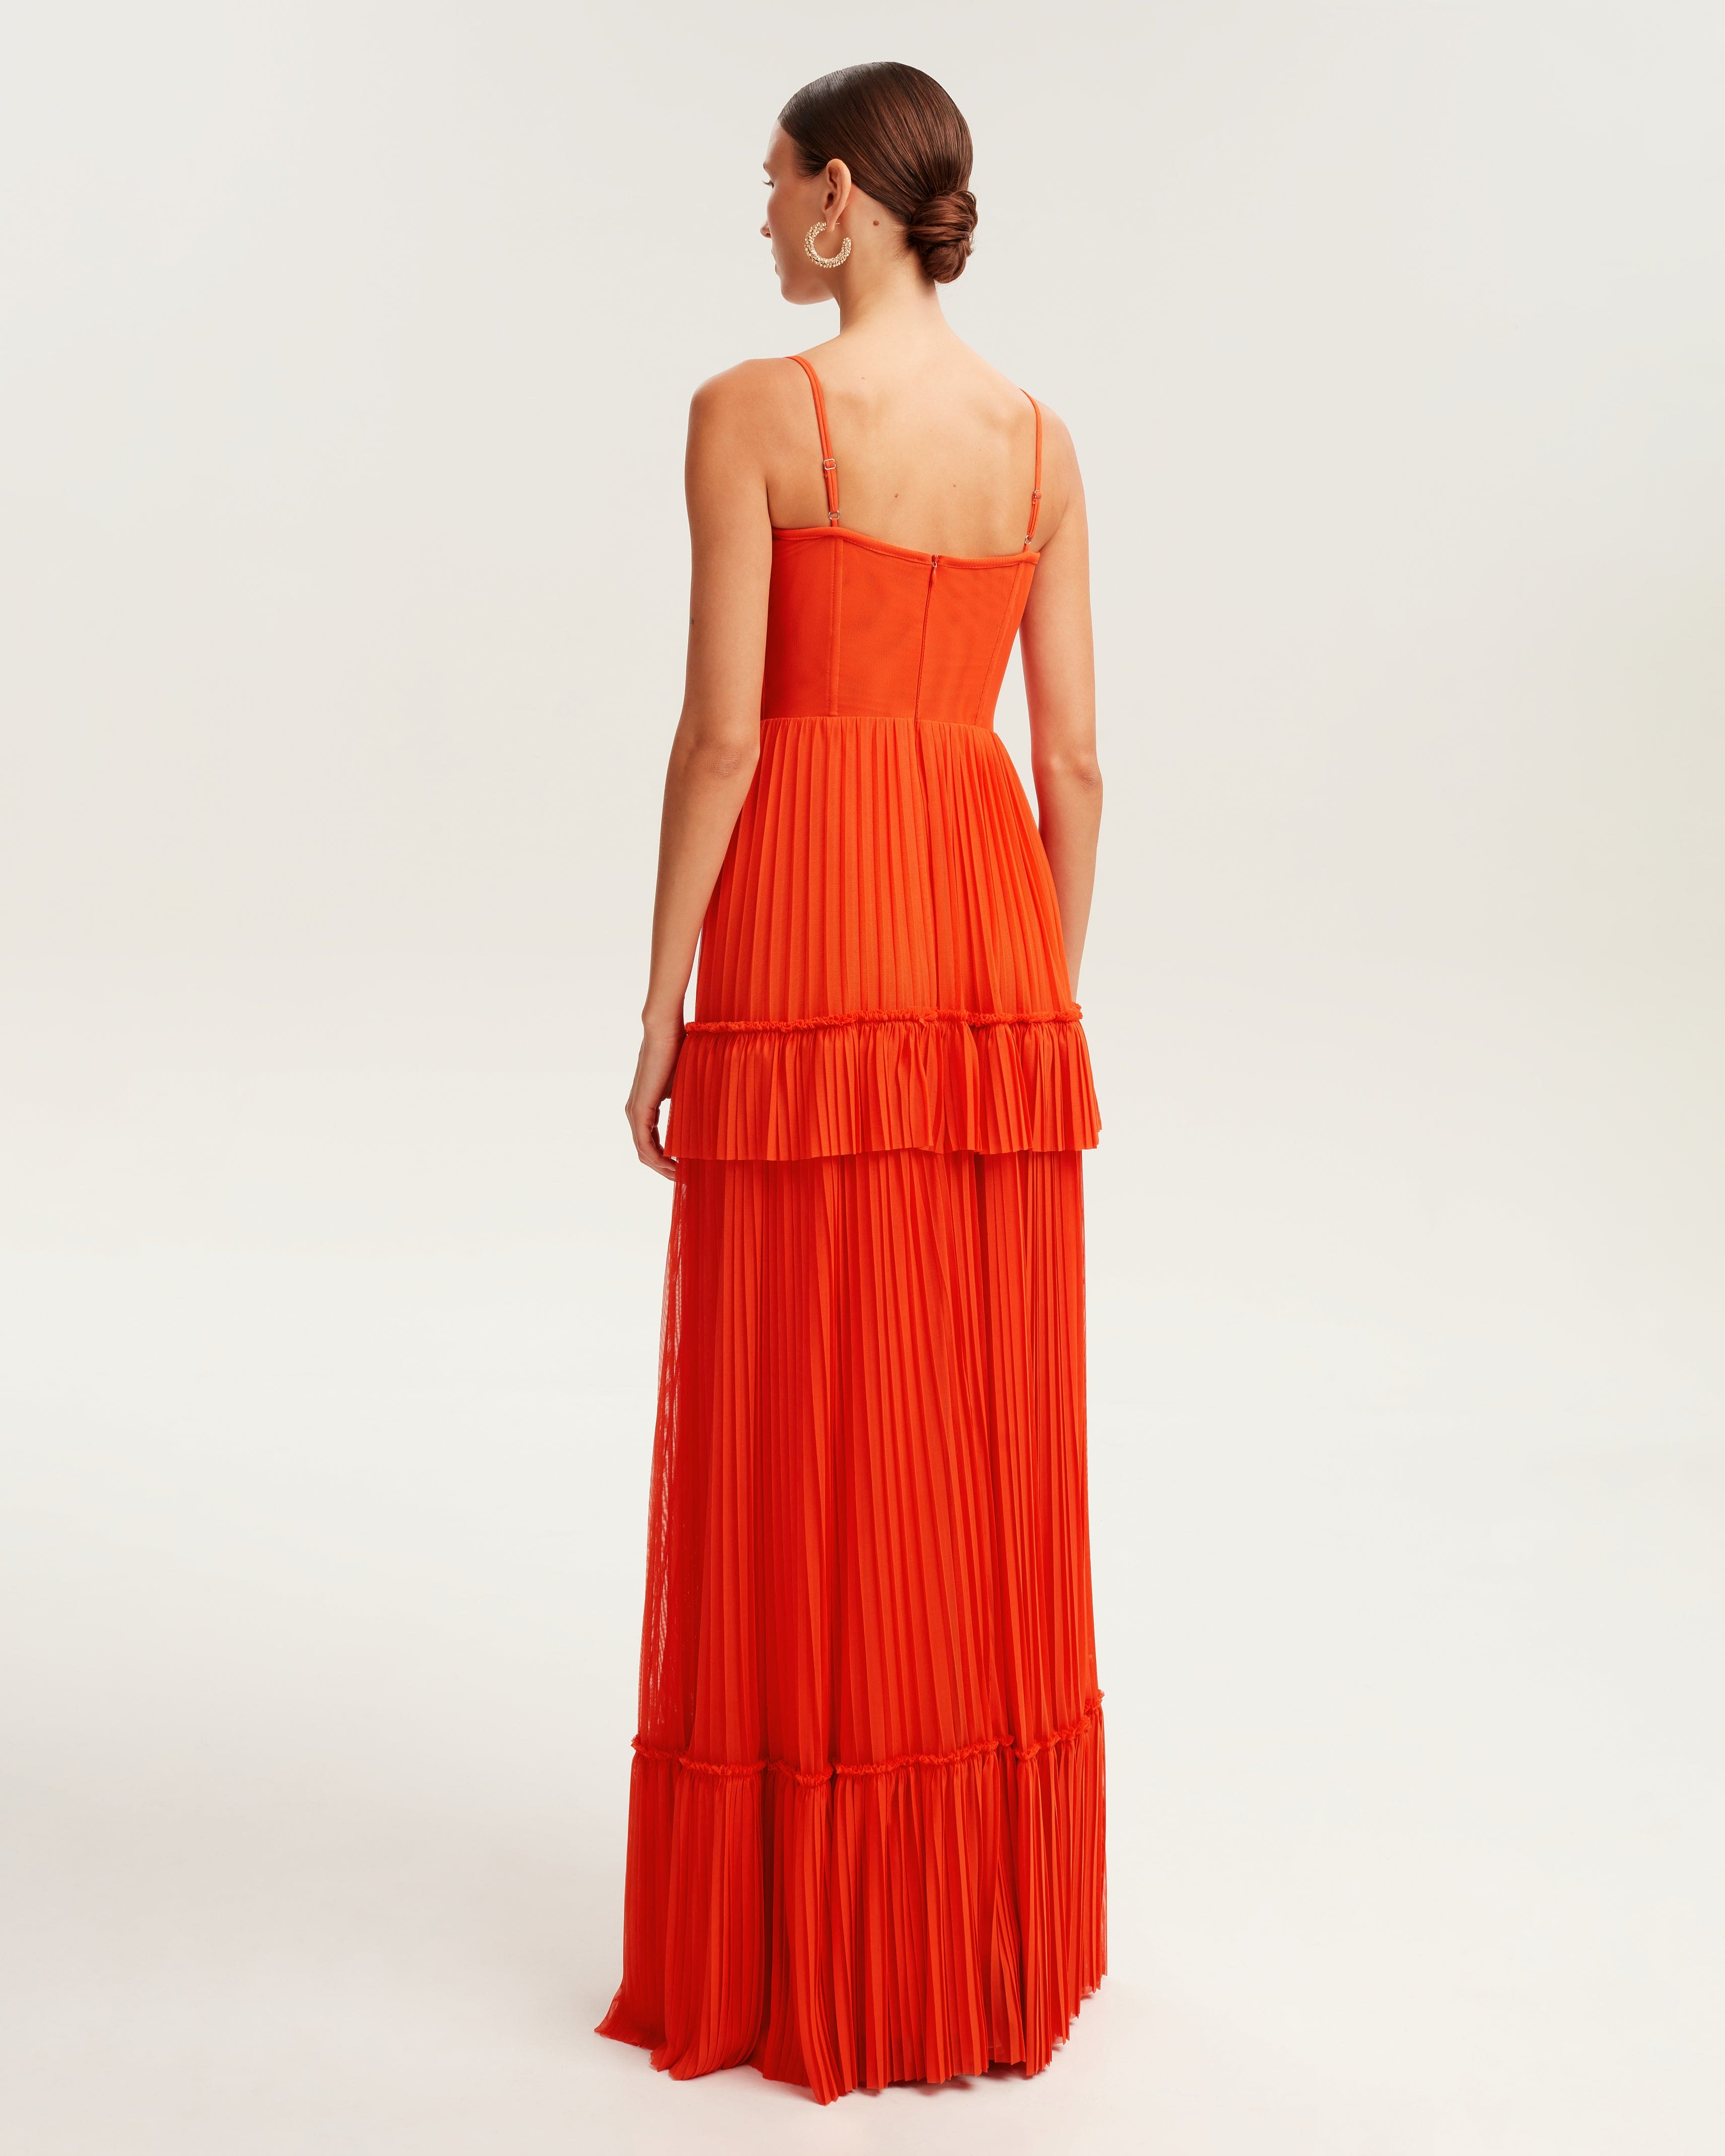 Coral spaghetti strap pleated maxi dress, Garden of Eden Milla Dresses ...